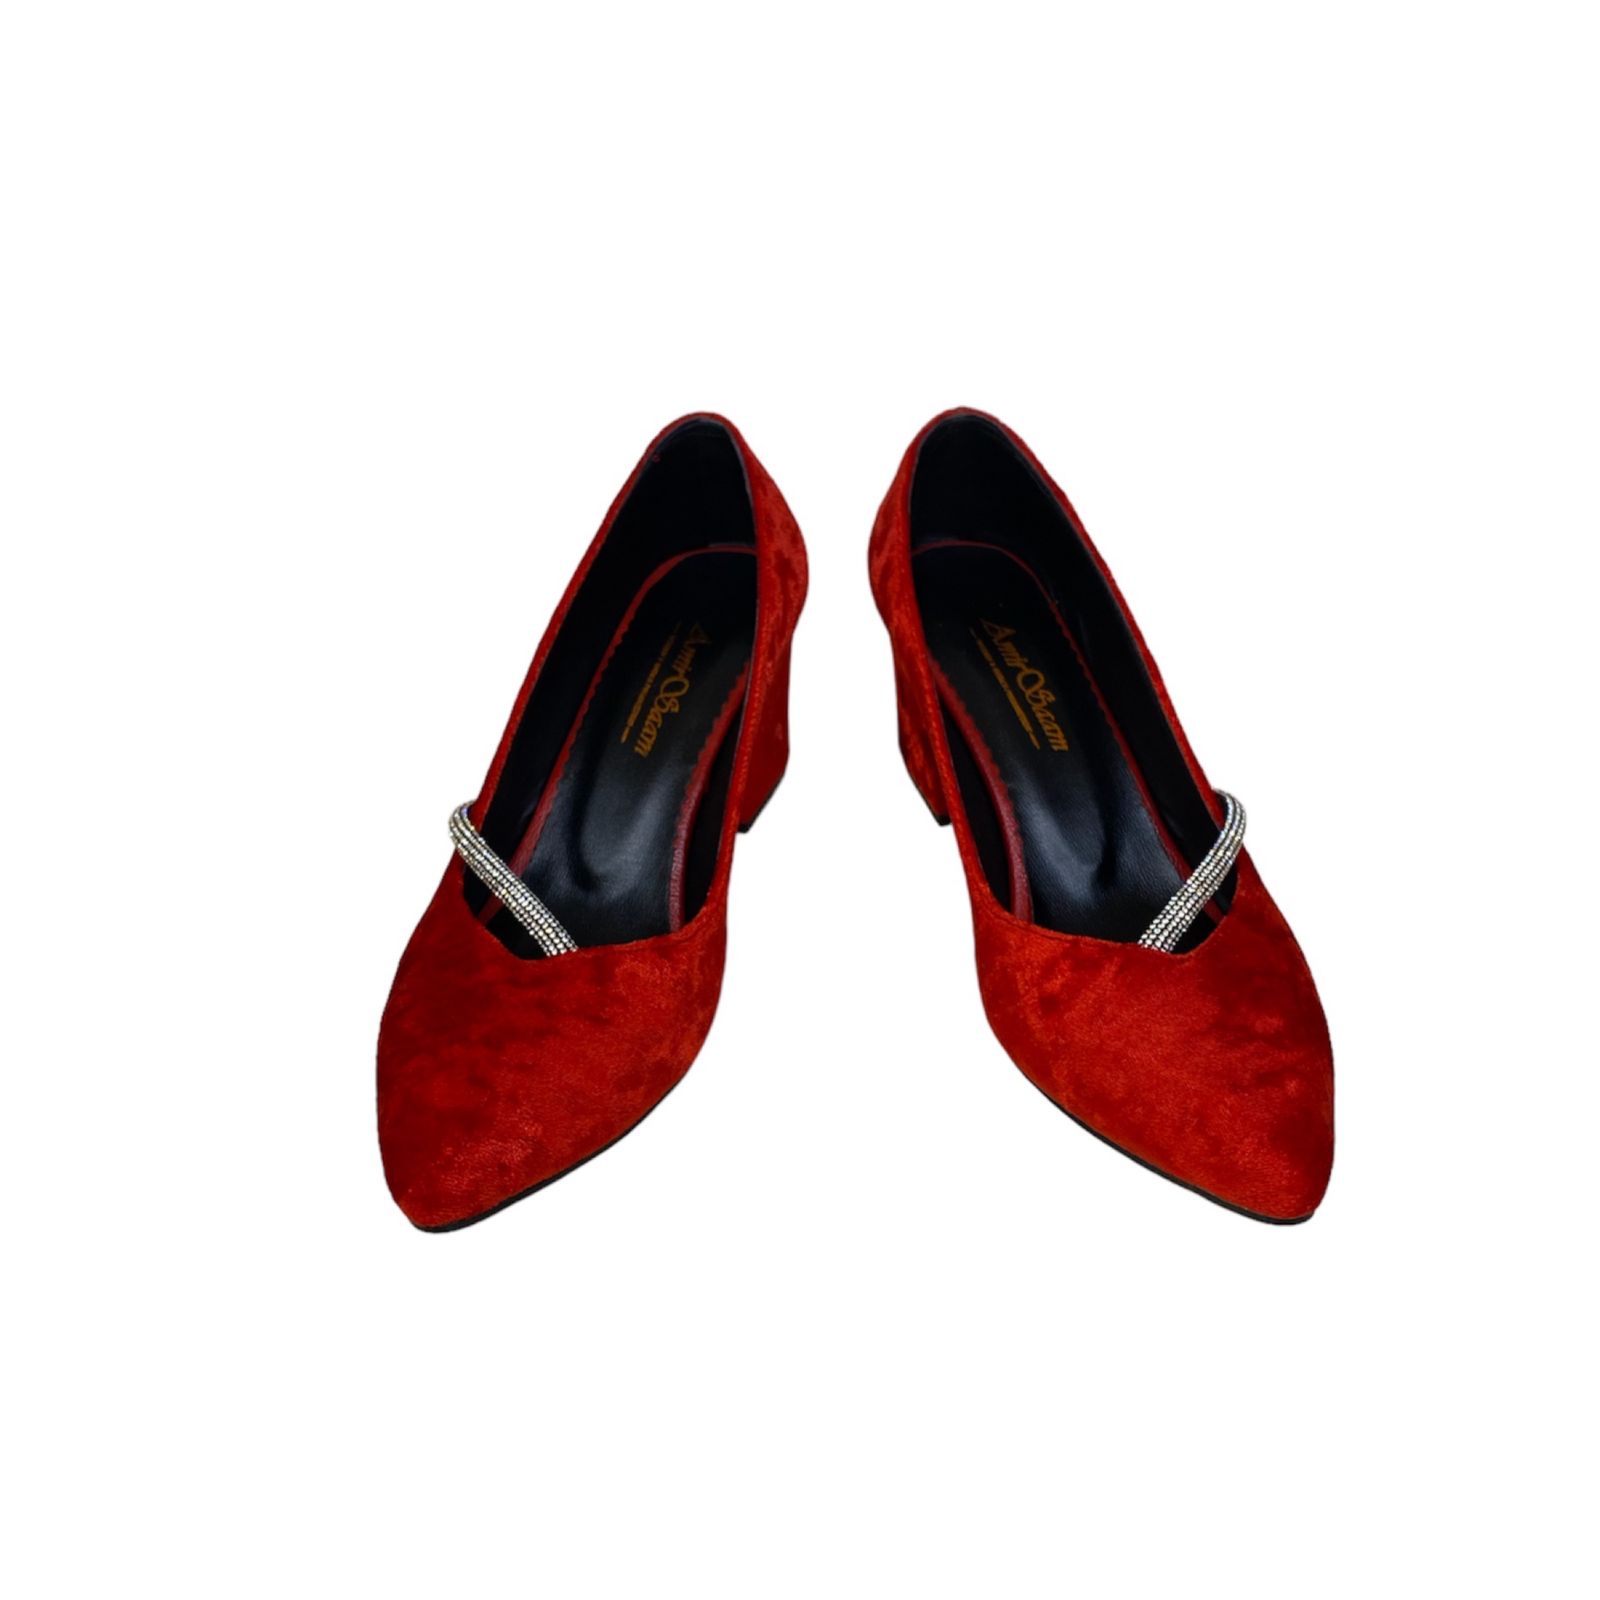 کفش زنانه مدل زیبا مخملی رنگ قرمز -  - 5